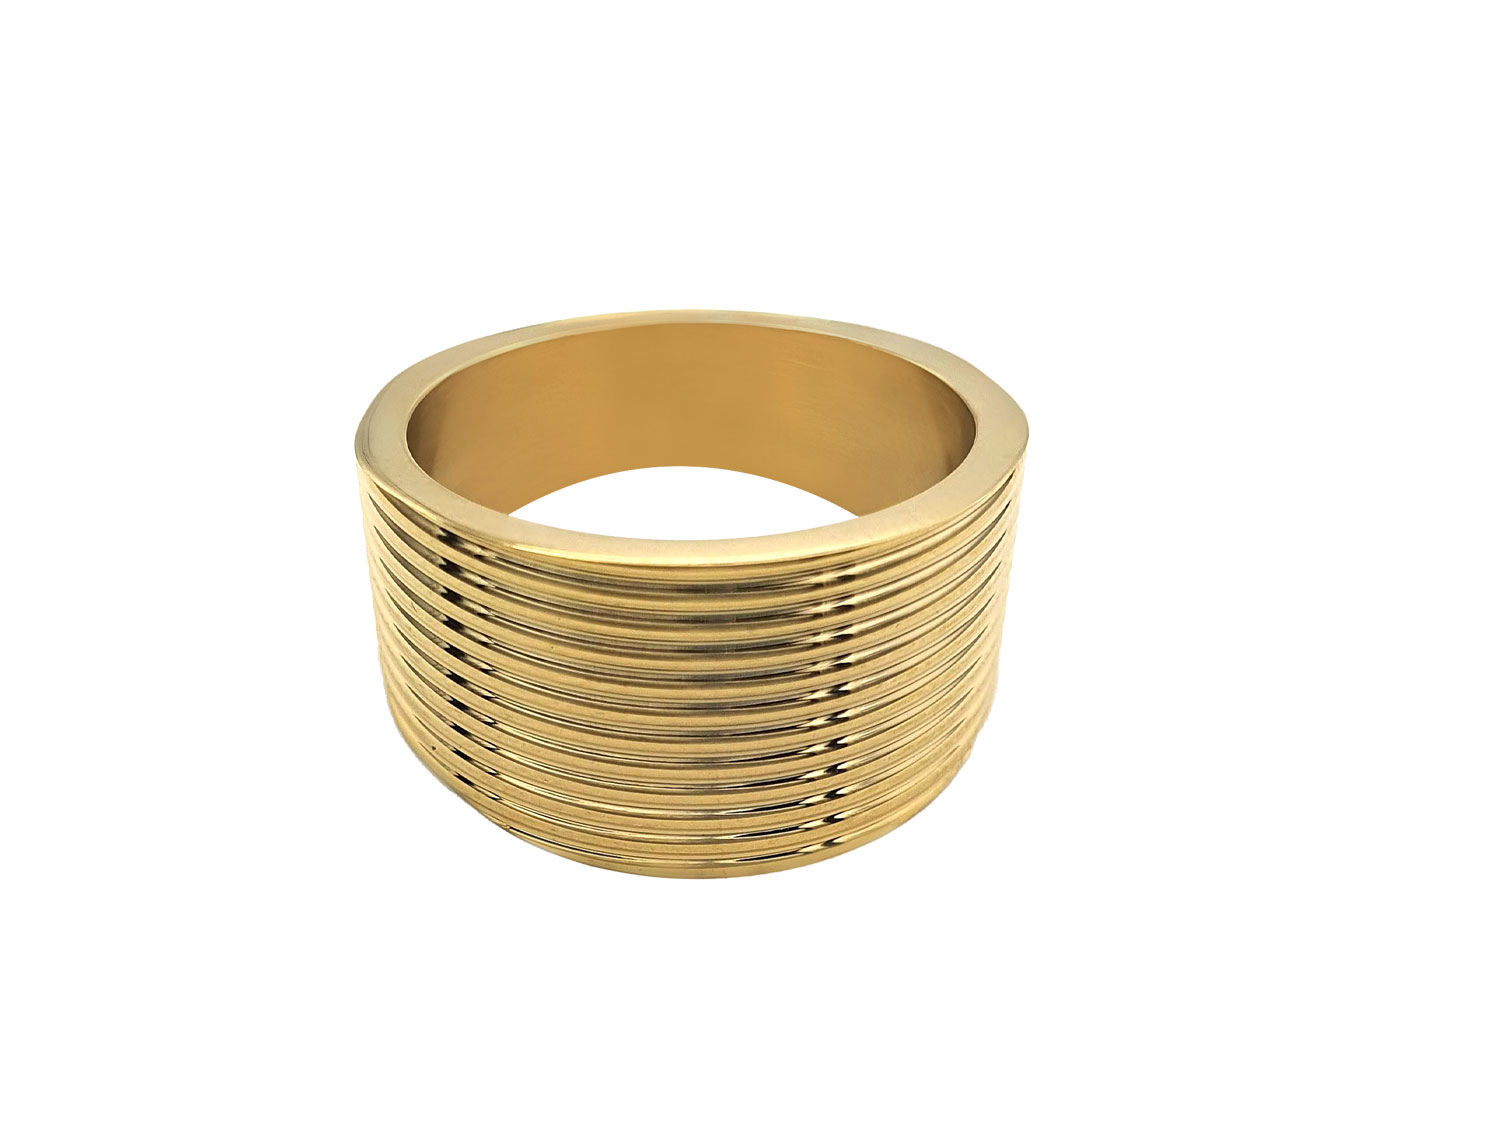 Κάντε μια λαμπερή εμφάνιση όπου κι αν πάτε με το δαχτυλίδι Closed Ring ! Αυτό το ελαφρύ δαχτυλίδι είναι εντυπωσιακό και άνετο στη χρήση.  Μέταλλο:Sterling Steel Επιμεταλλωμένο : Επιχρυσωμένο Τύπος: Κλειστό Δαχτυλίδι Ζιργκόν: Λευκό Μέγεθος δαχτυλιδιού: 7 και 8